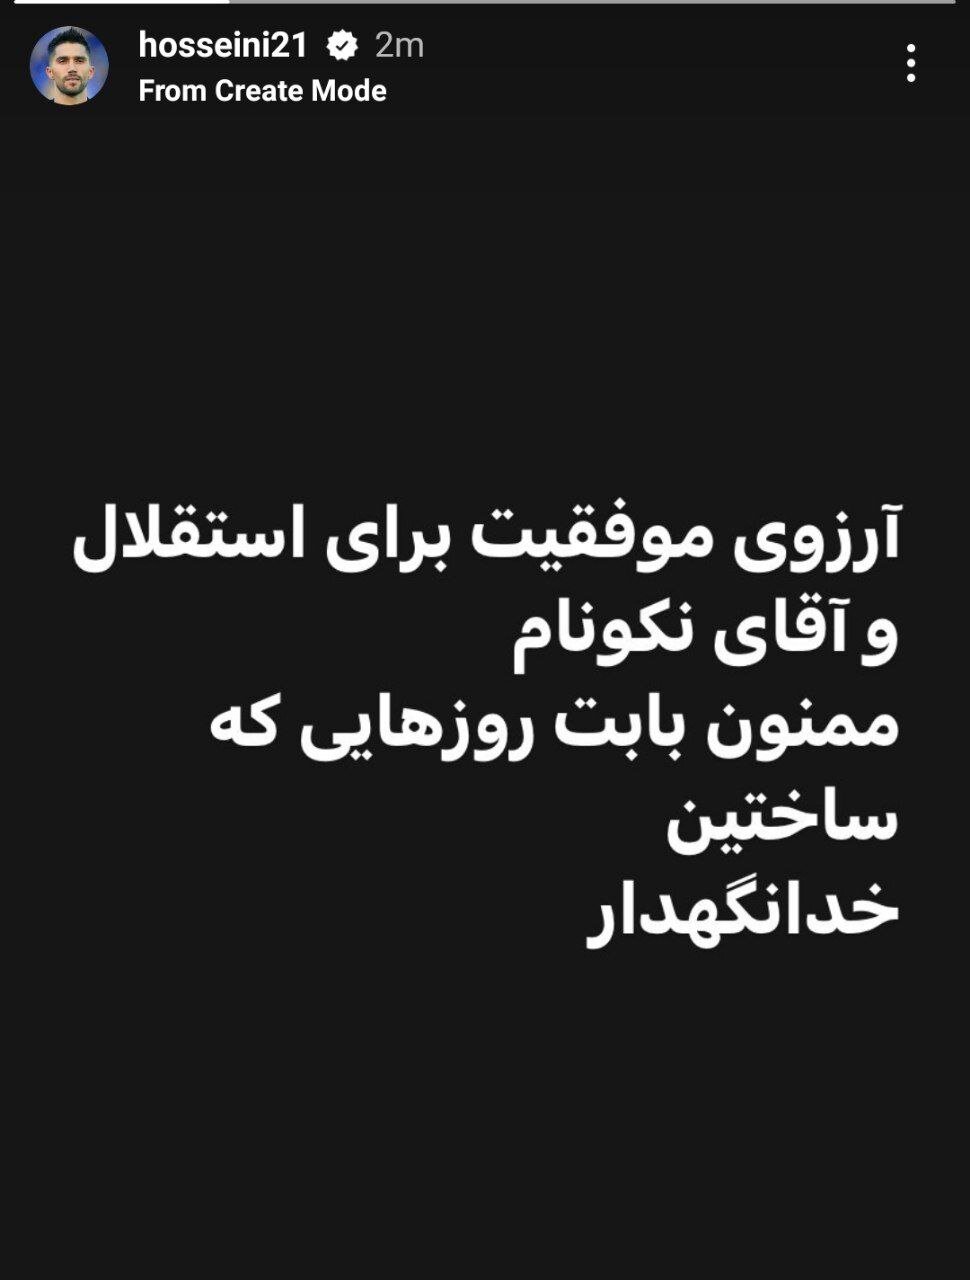 حسین حسینی رسما از استقلال جدا شد +عکس